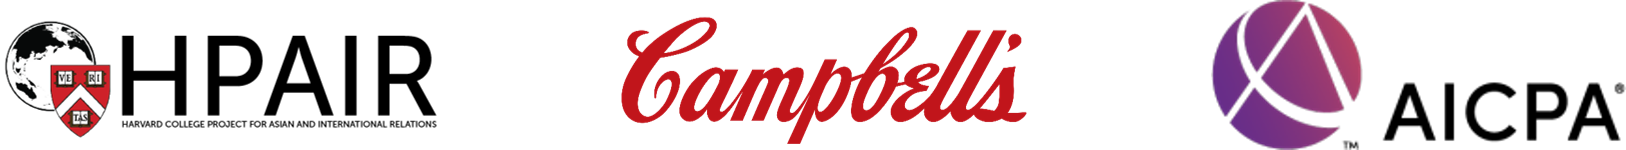 Company logos for Harvard, Campbell, and AICPA